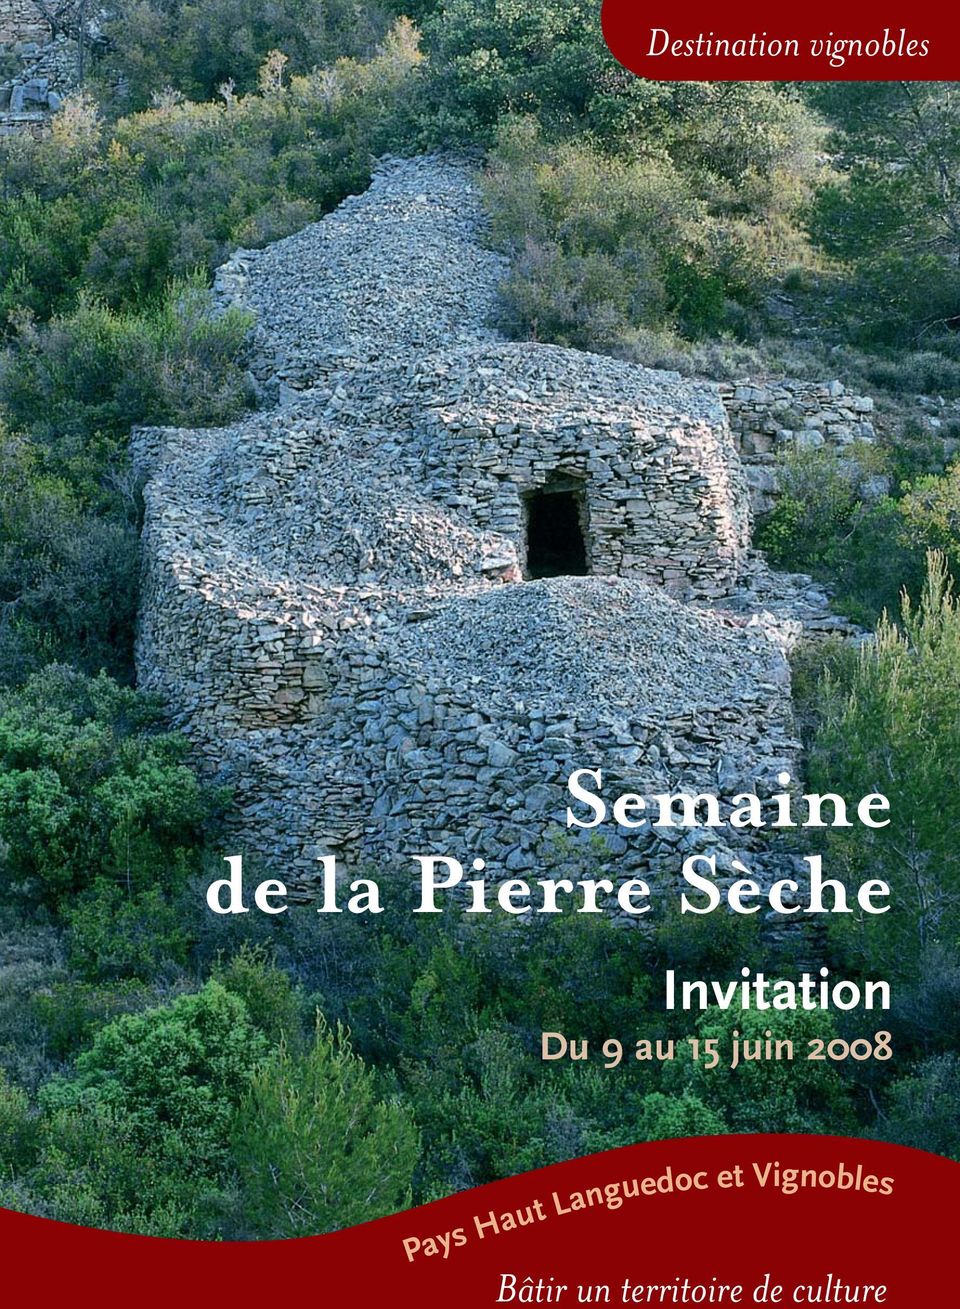 juin 2008 Pays Haut Languedoc et